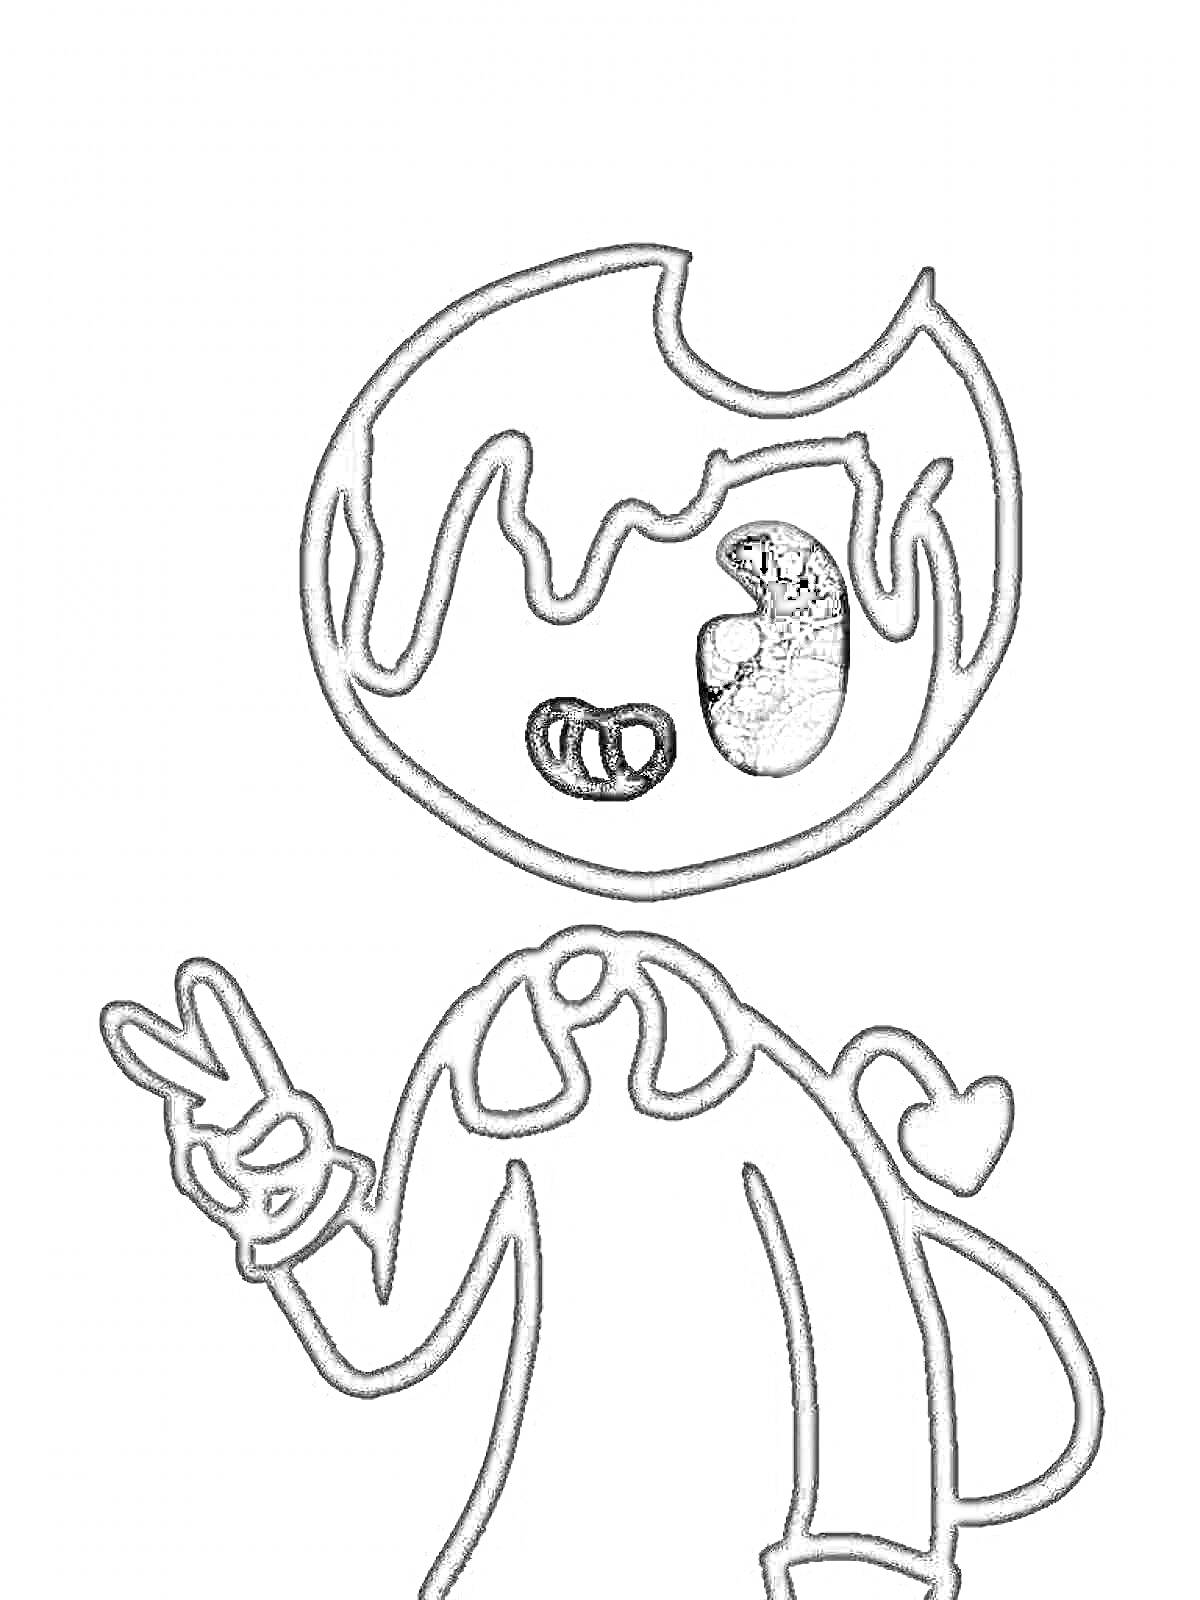  Раскраска с изображением персонажа Bendy, показывающего знак мира, с сердцем на спине